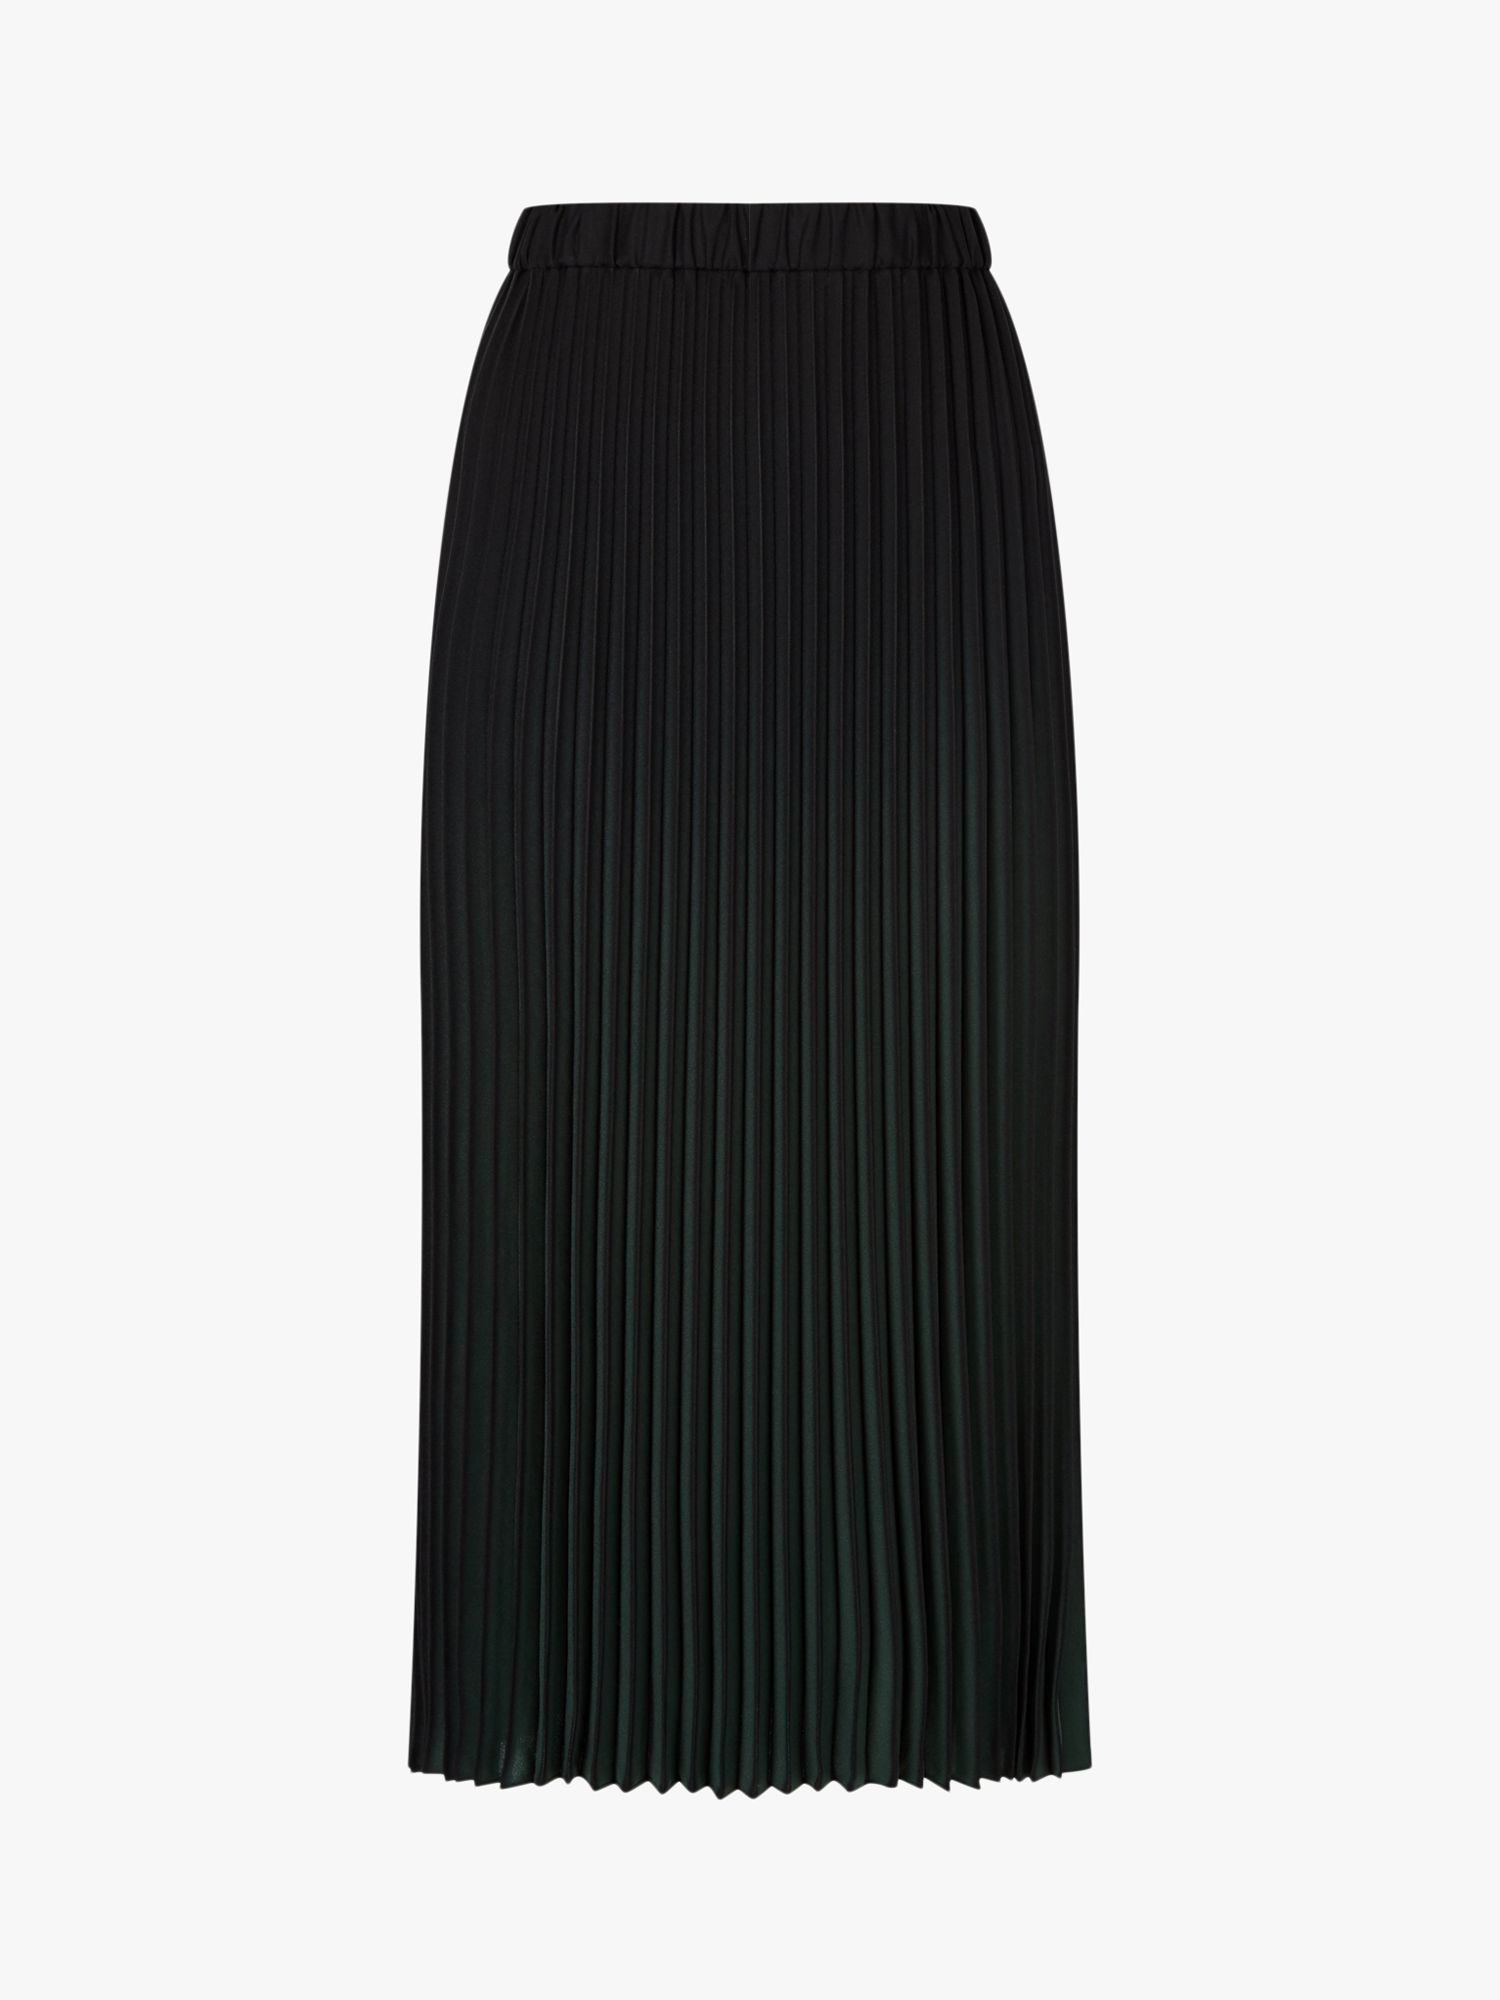 Hobbs Tasha Pleated Midi Skirt, Black/Green